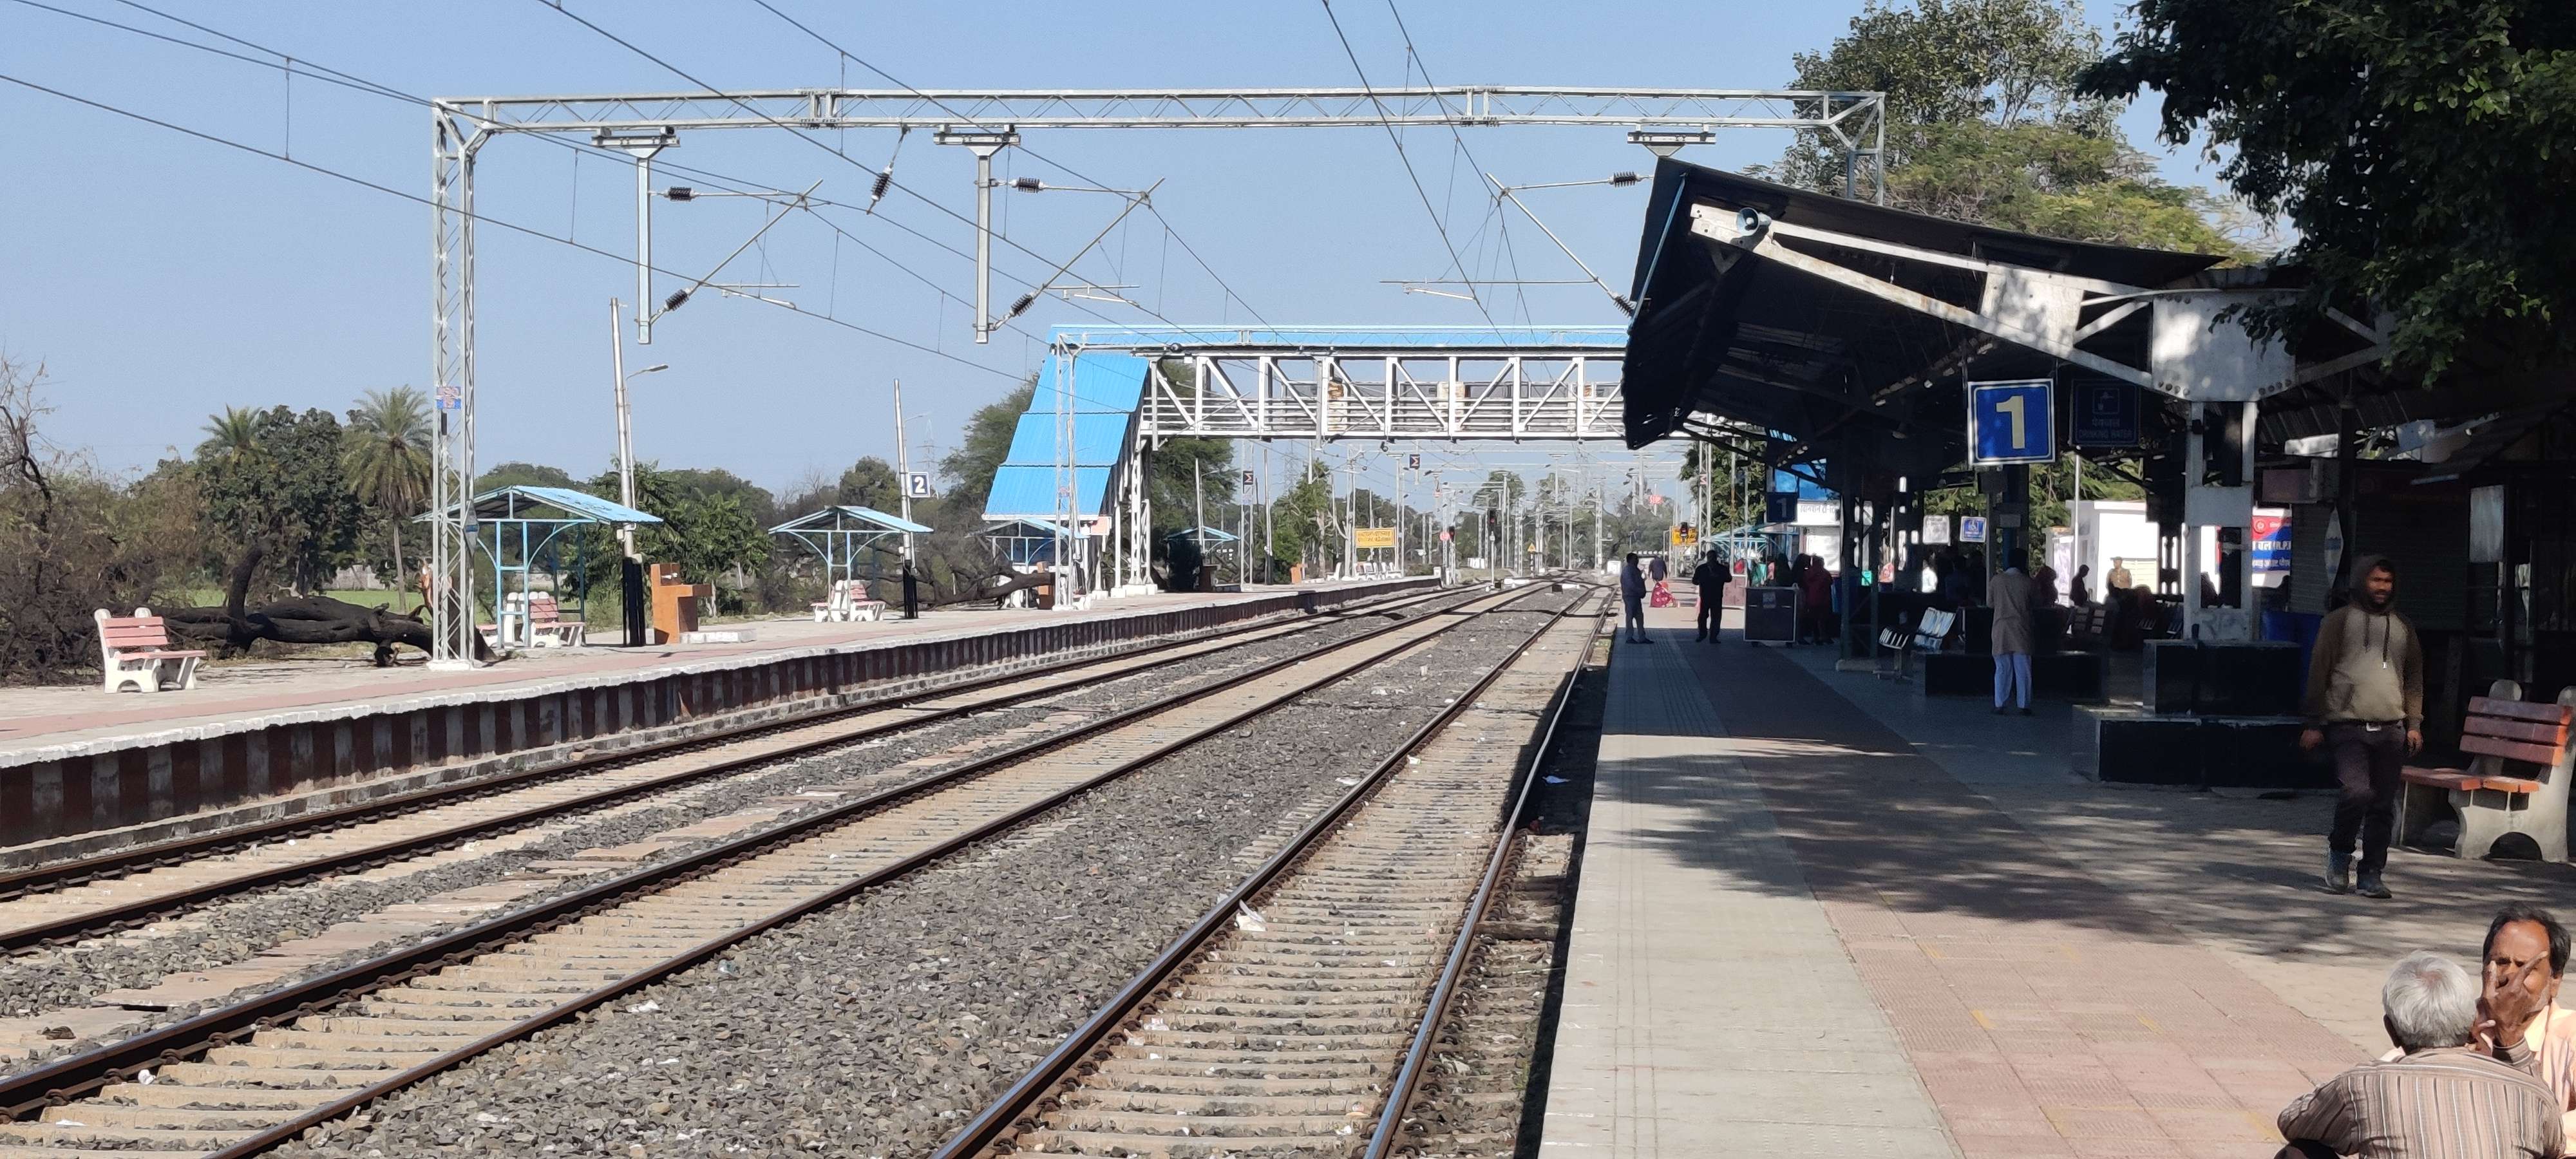 Railway news : ट्रेनों में टाइम-टेबल बिगड़ा, खाली ही दौड़ रही, स्टेशन पर होने वाली इनकम आधी हुई